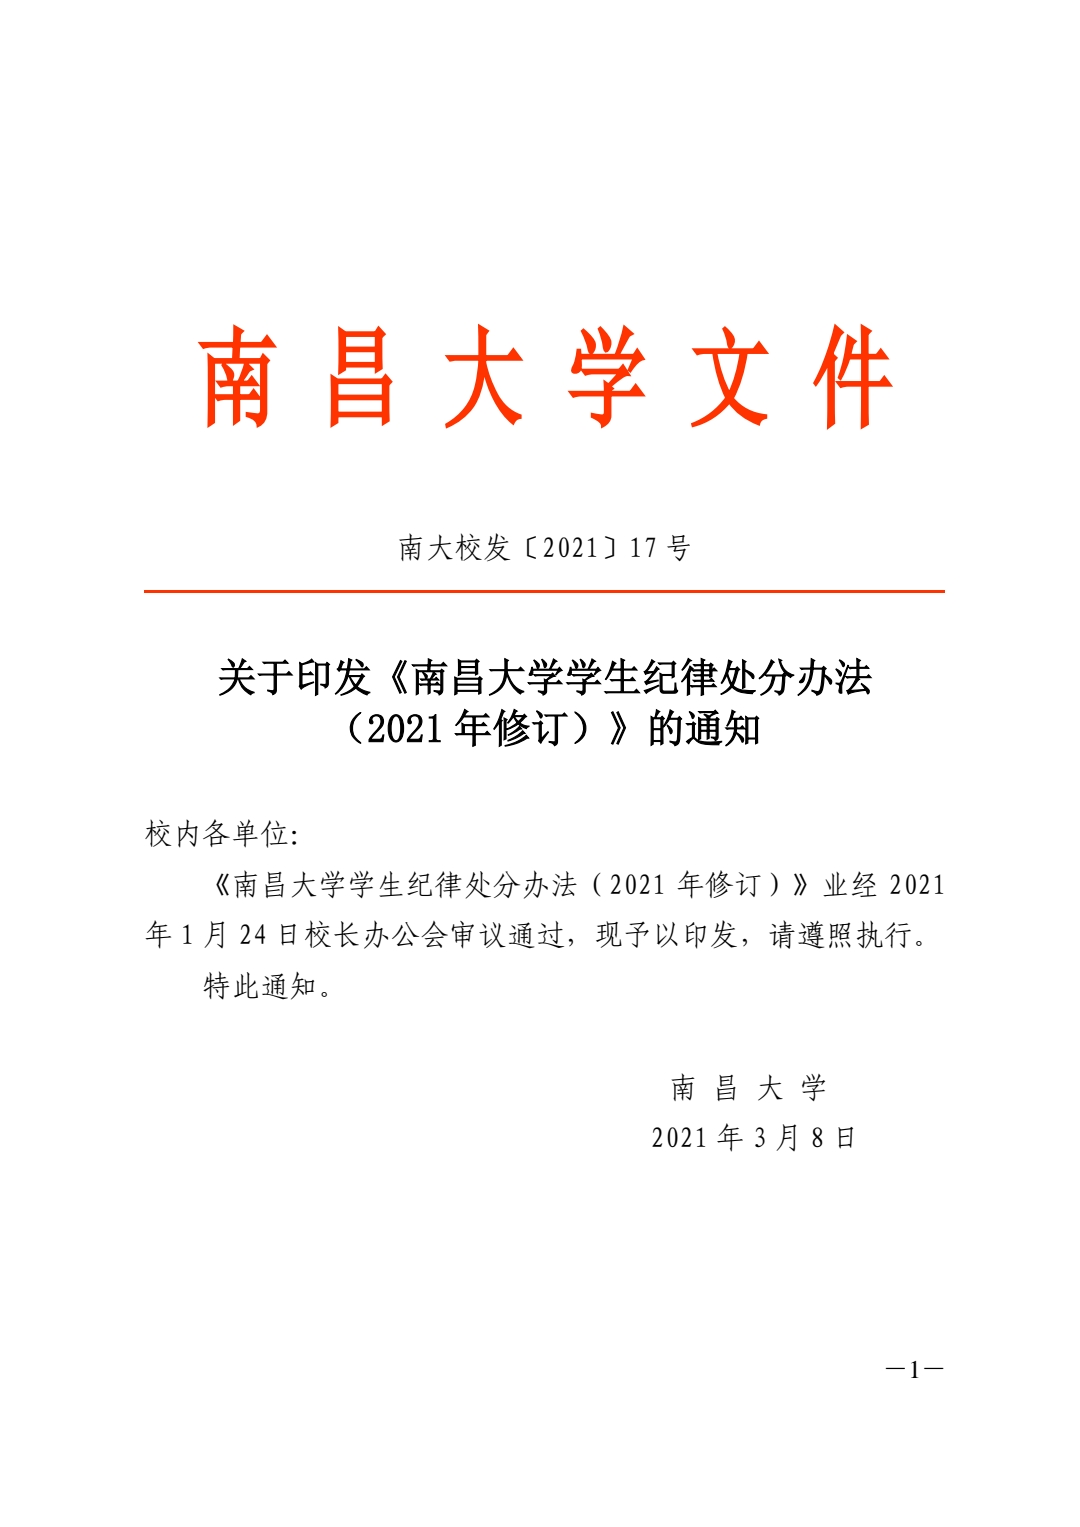 关于印发《南昌大学学生纪律处分办法（2021年修订）》的通知_pdf_16180286958.jpg